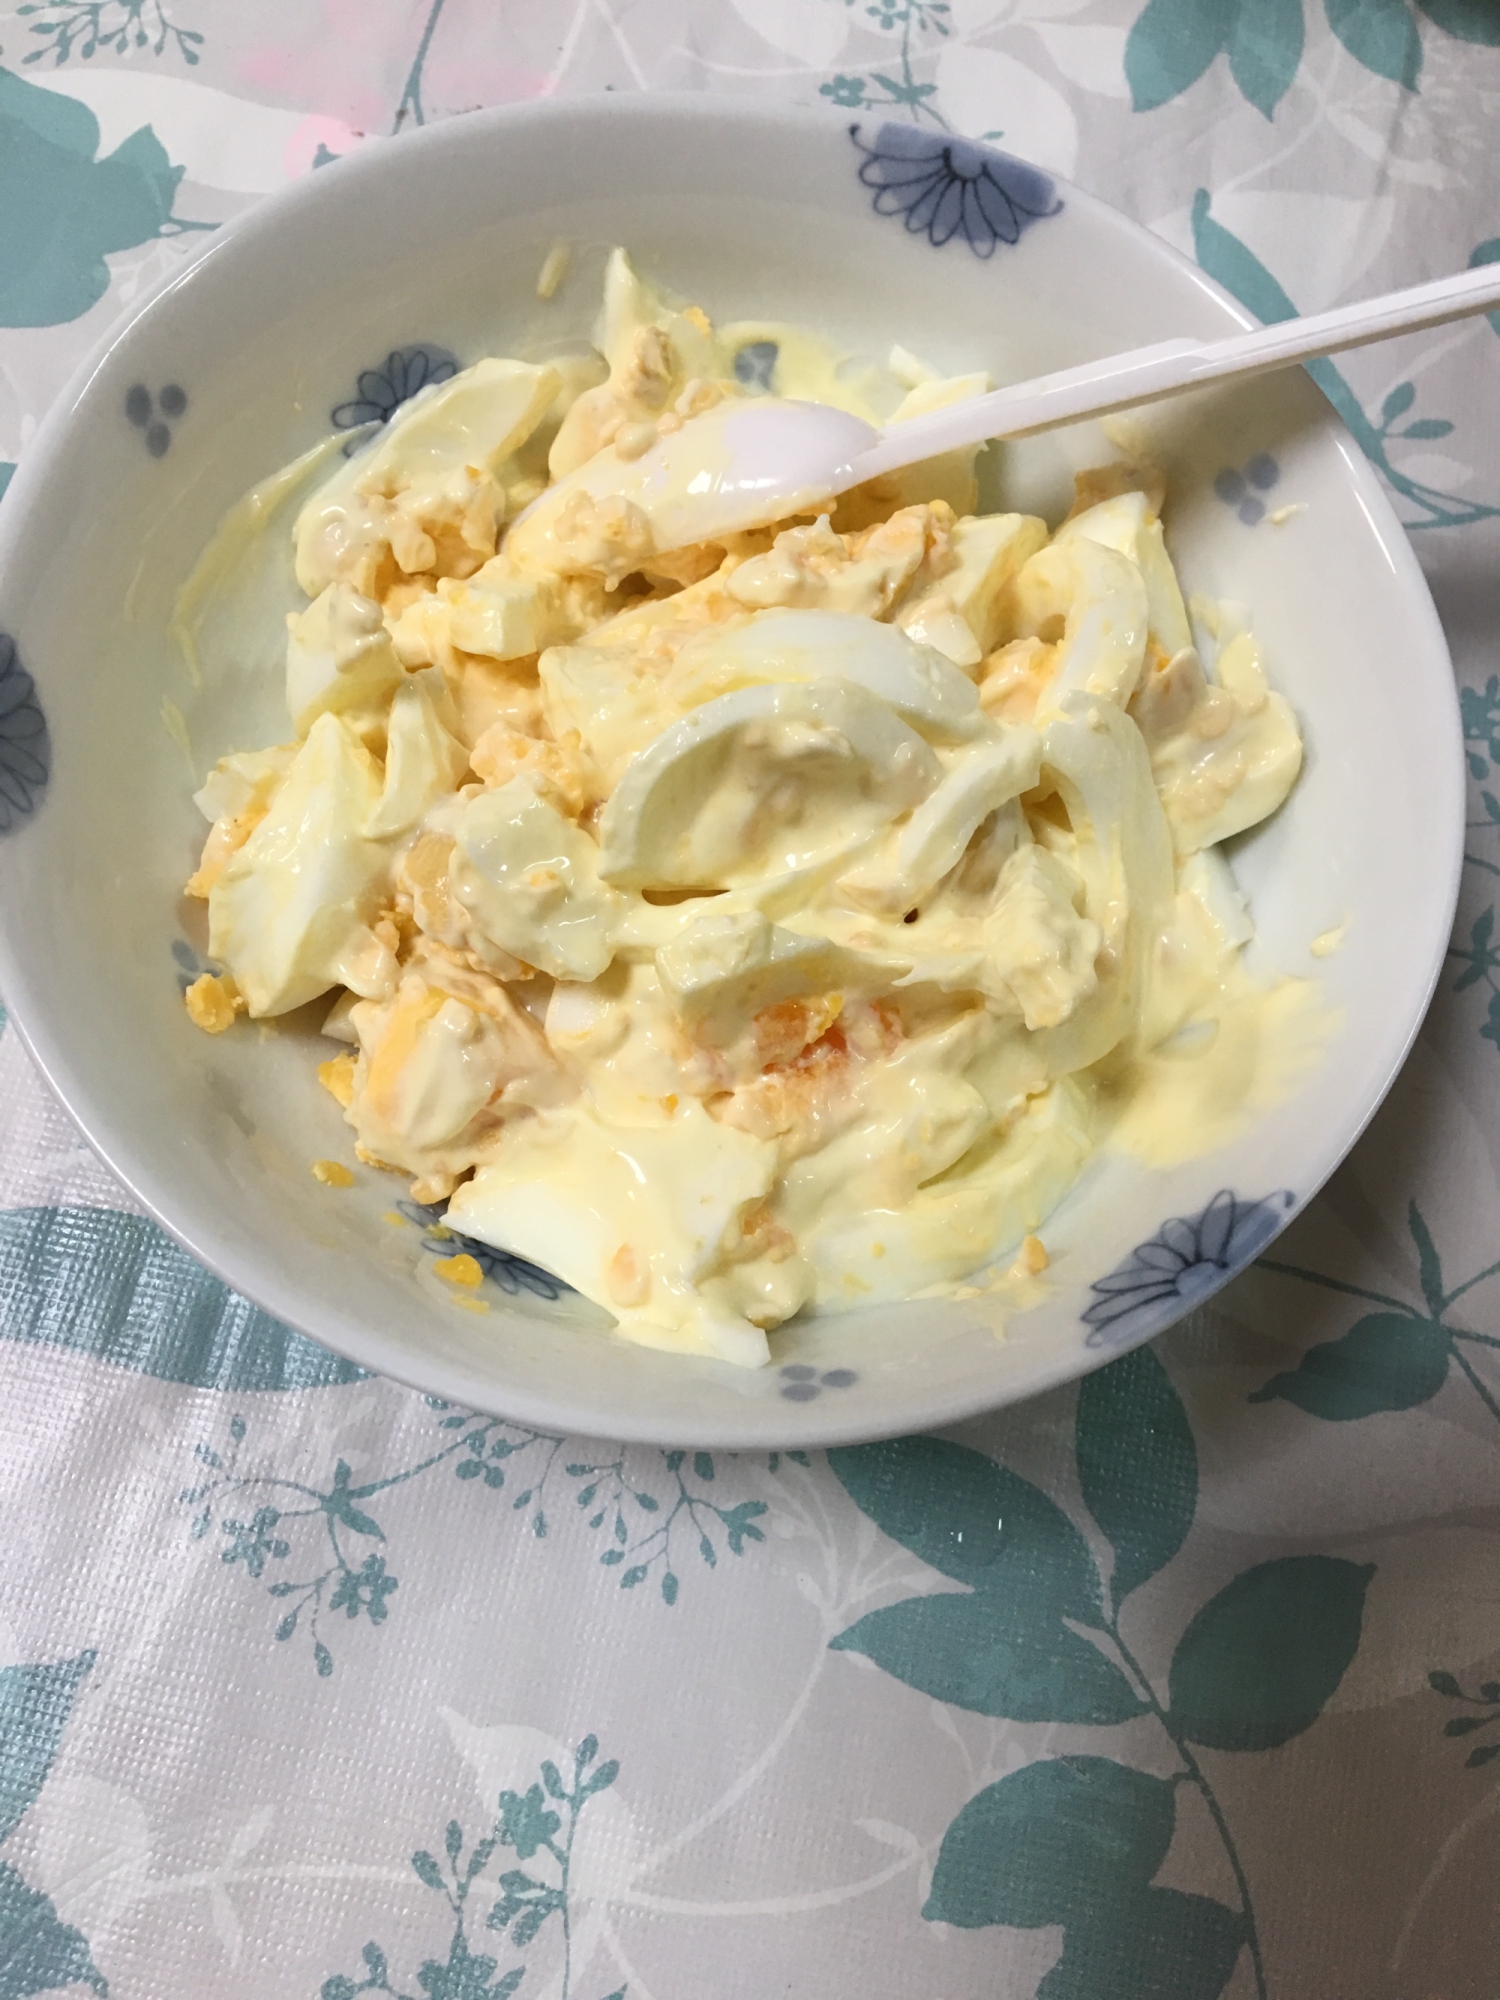 ゆで卵ととろけるミックスチーズマヨサラダ☆